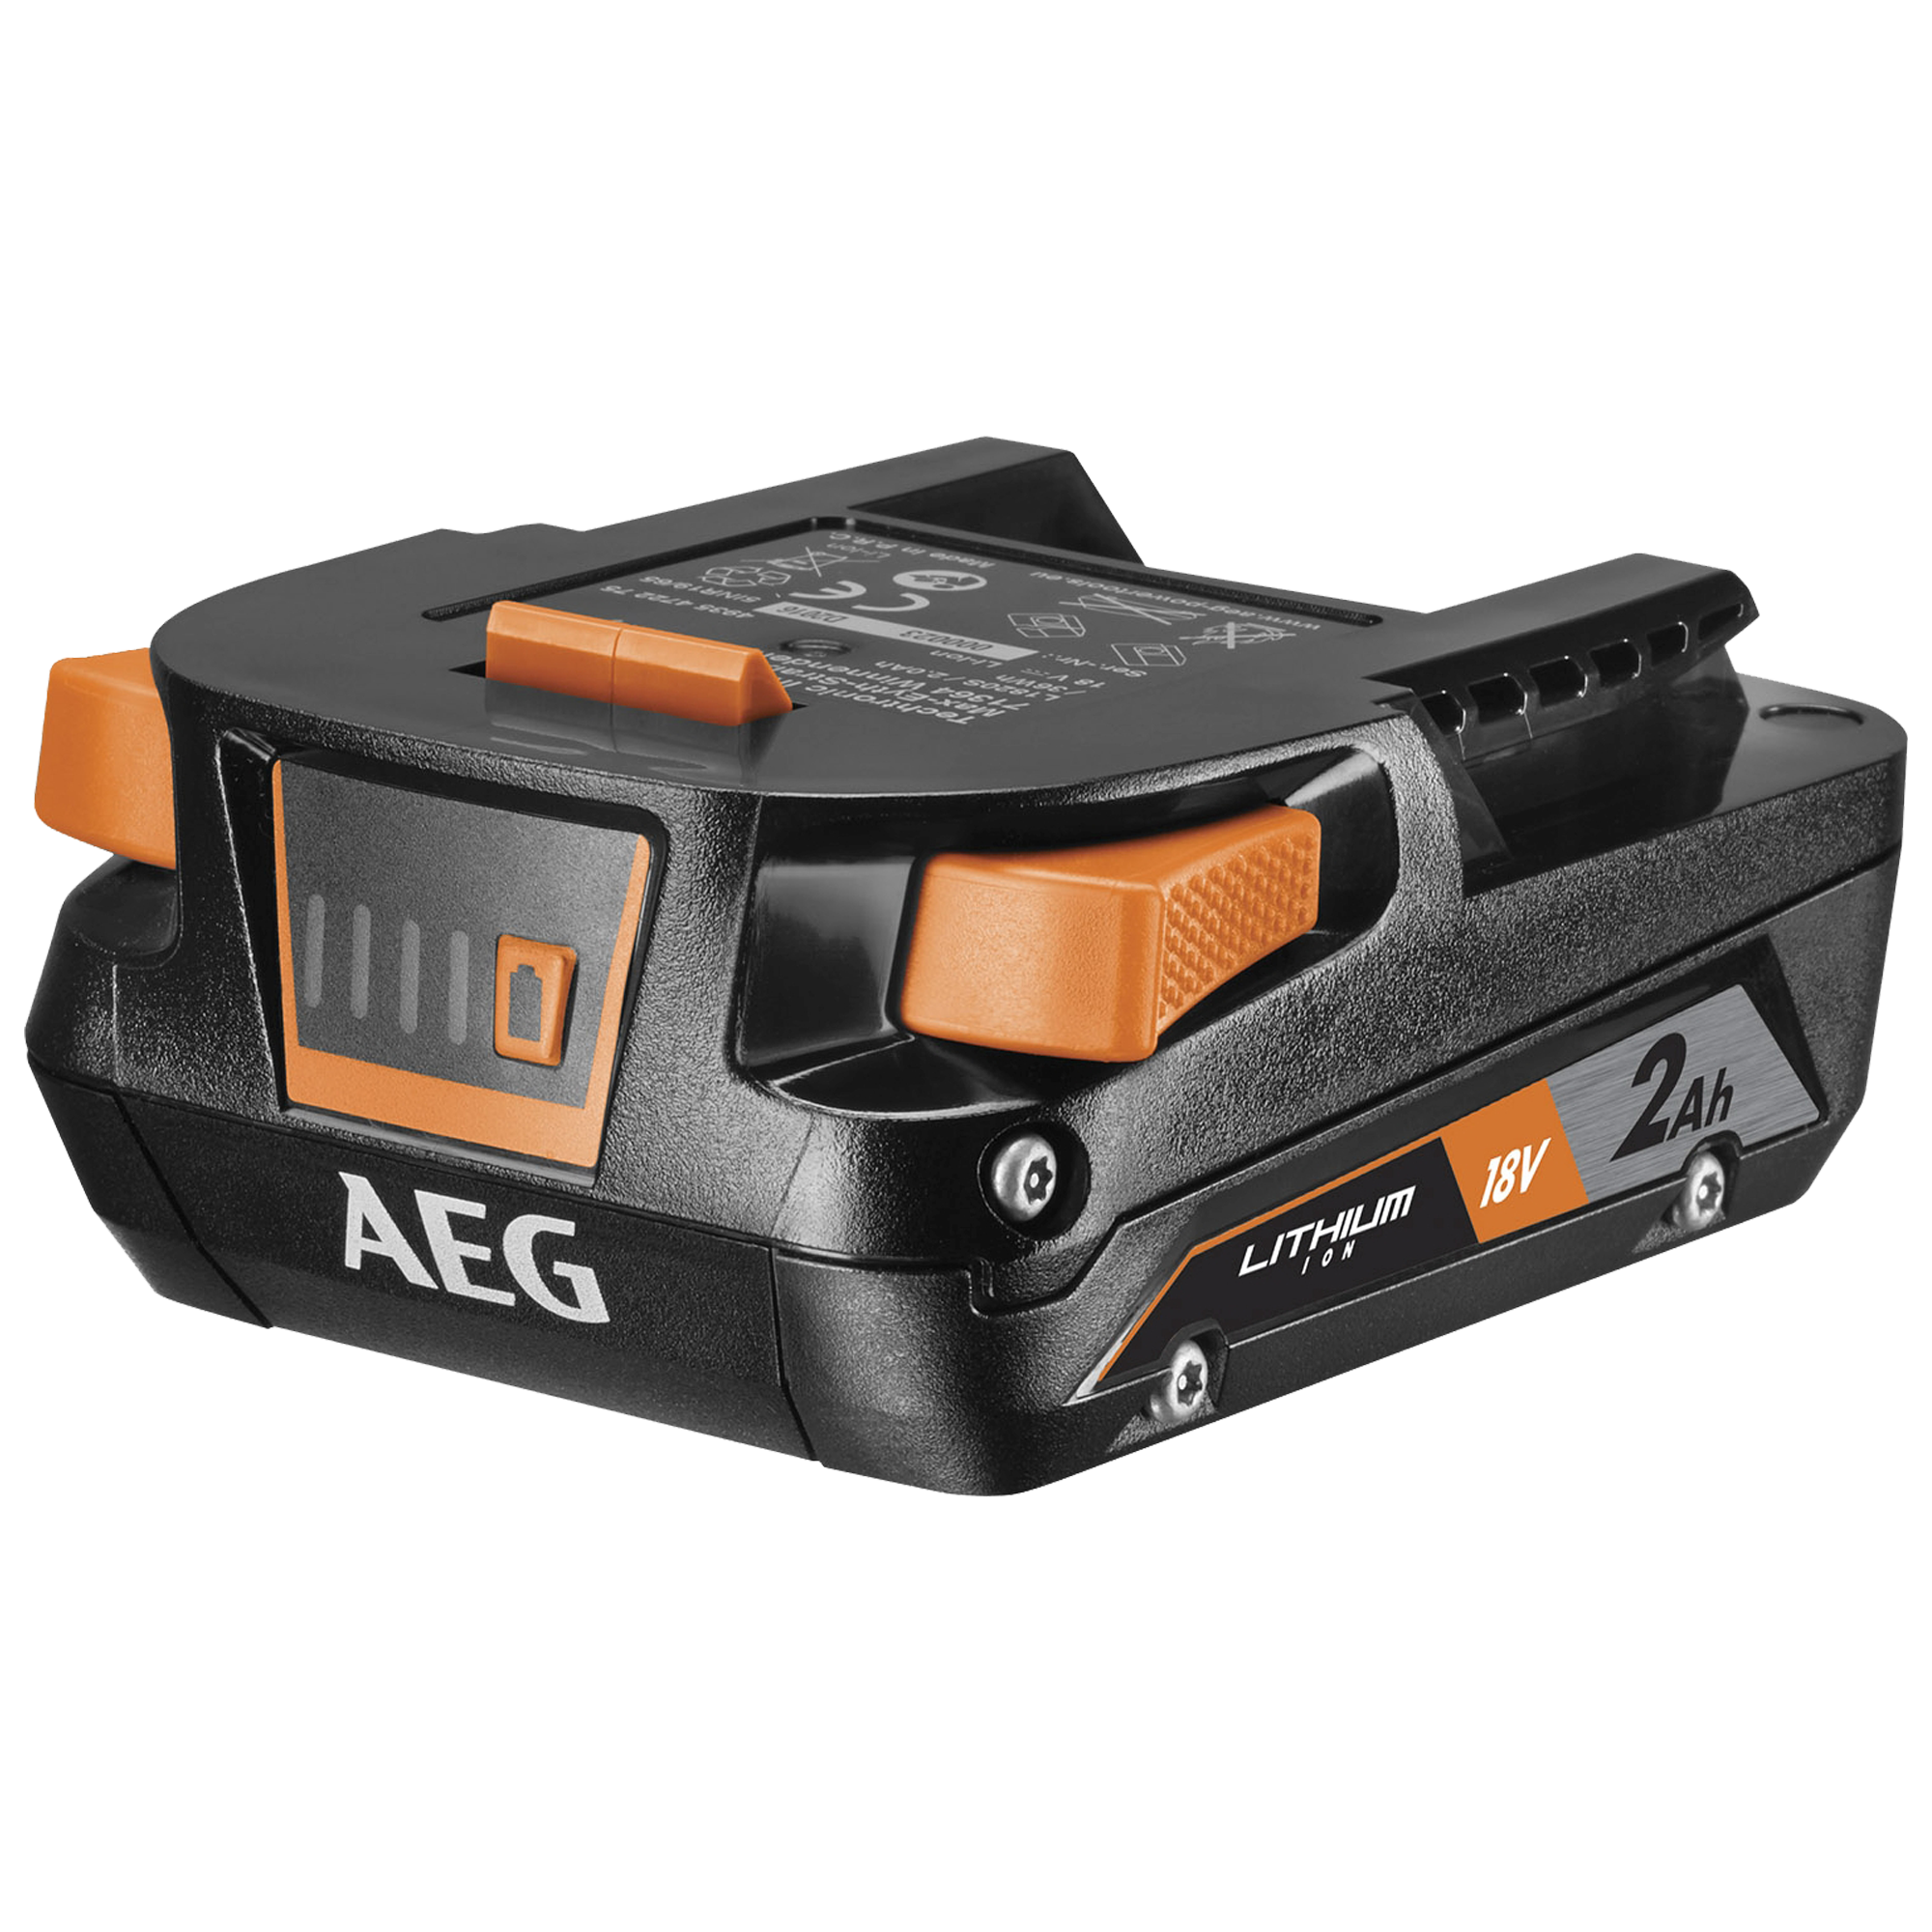 AEG набор зарядное устройство + аккумулятор setl1820s 4935478932. Аккумулятор + зарядное устройство AEG setl1820s 4935478932. L1820s /2.0Ah. Набор зарядное устройство + аккумулятор setl1820s AEG. Зарядное устройство aeg